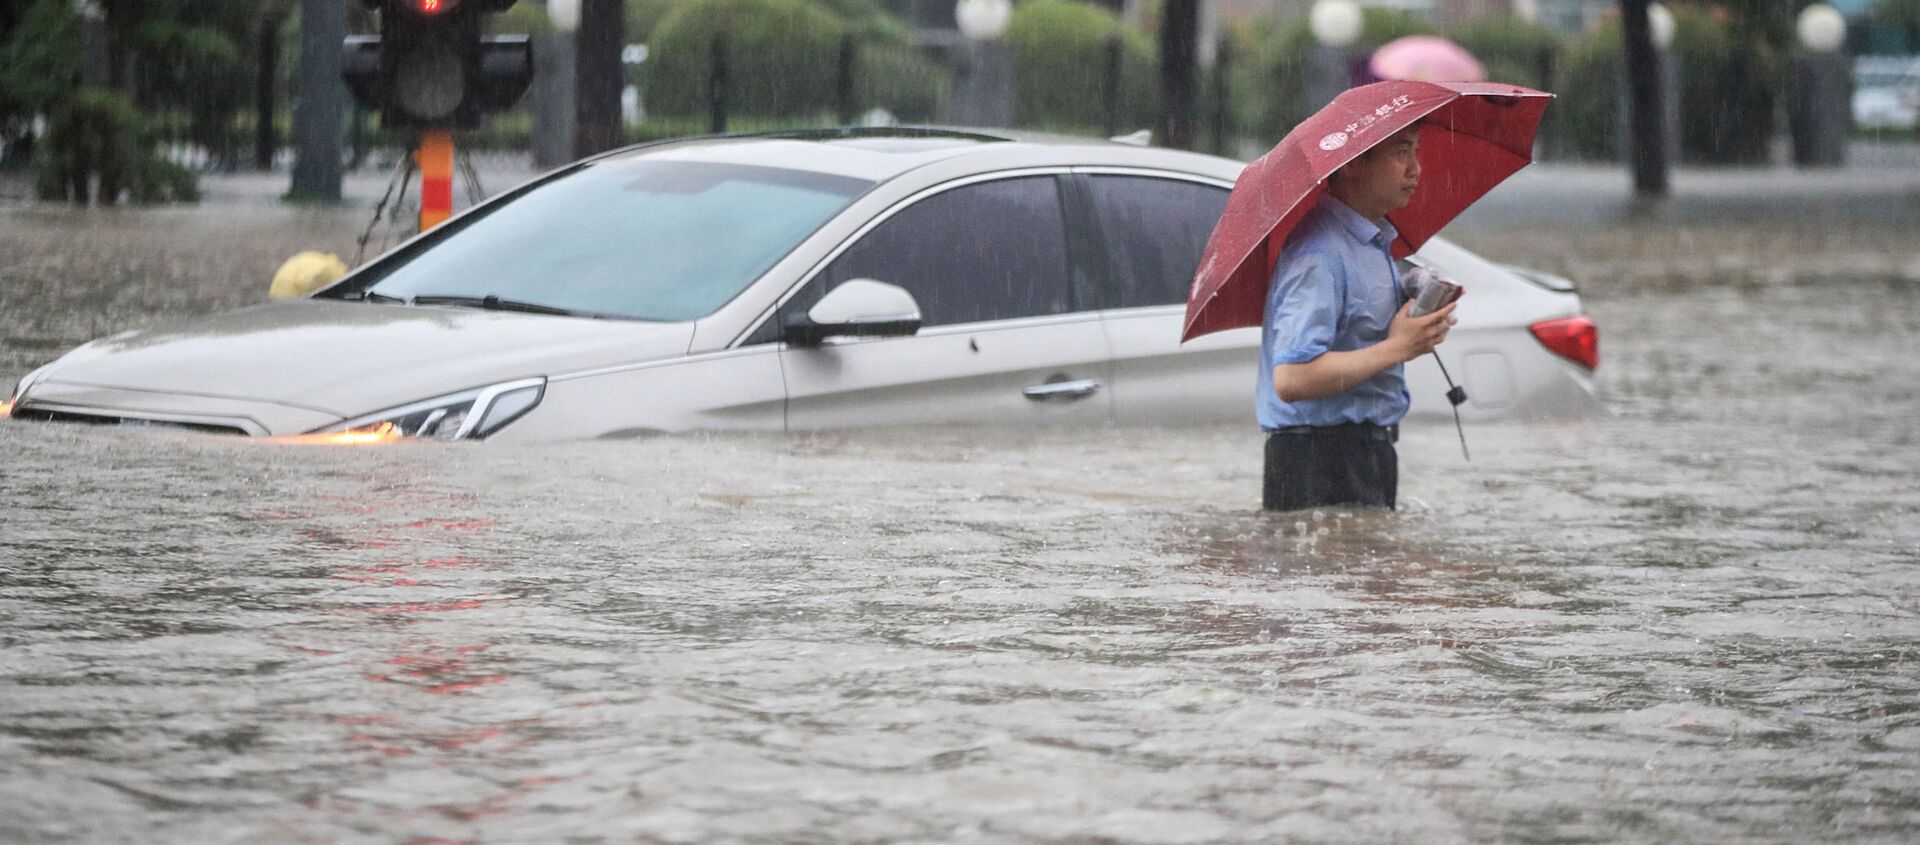 فيضانات هائلة تنجم عن أمطار غزيرة في تشنغتشو، وسط محافظة هينان، الصين 20 يوليو 2021 - سبوتنيك عربي, 1920, 04.08.2021